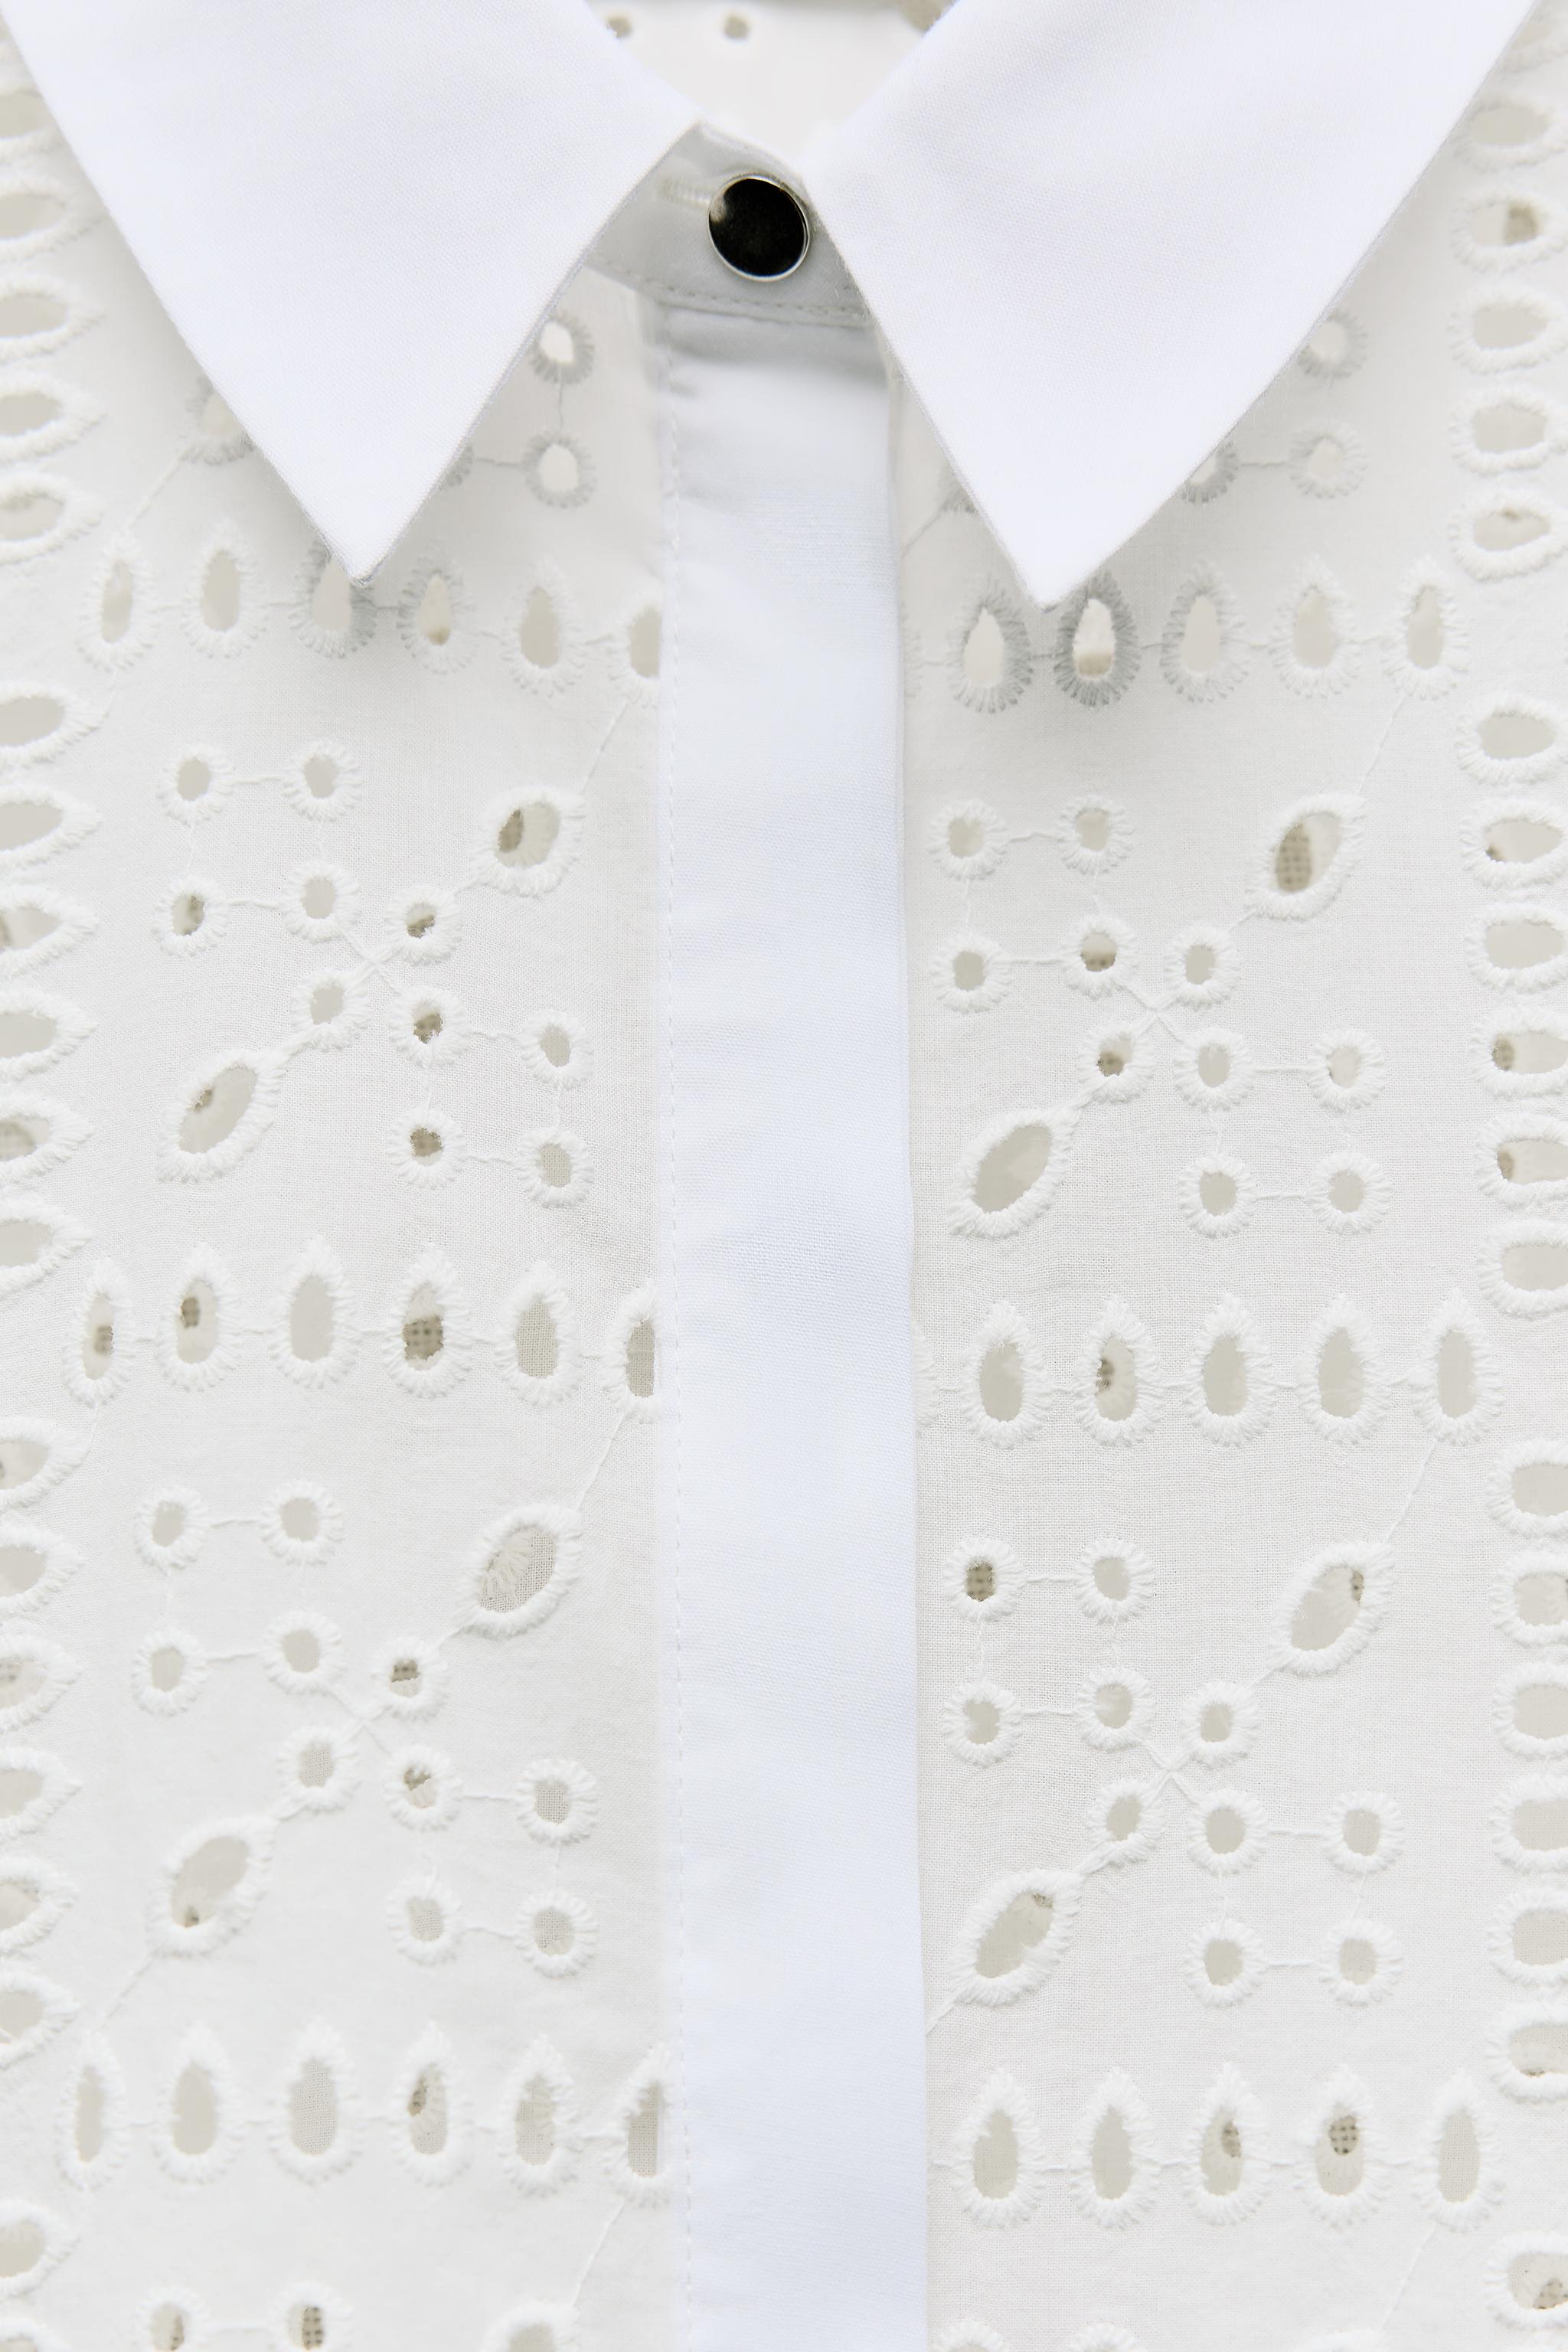 カットワーク刺繍入りシャツ - ホワイト | ZARA Japan / 日本